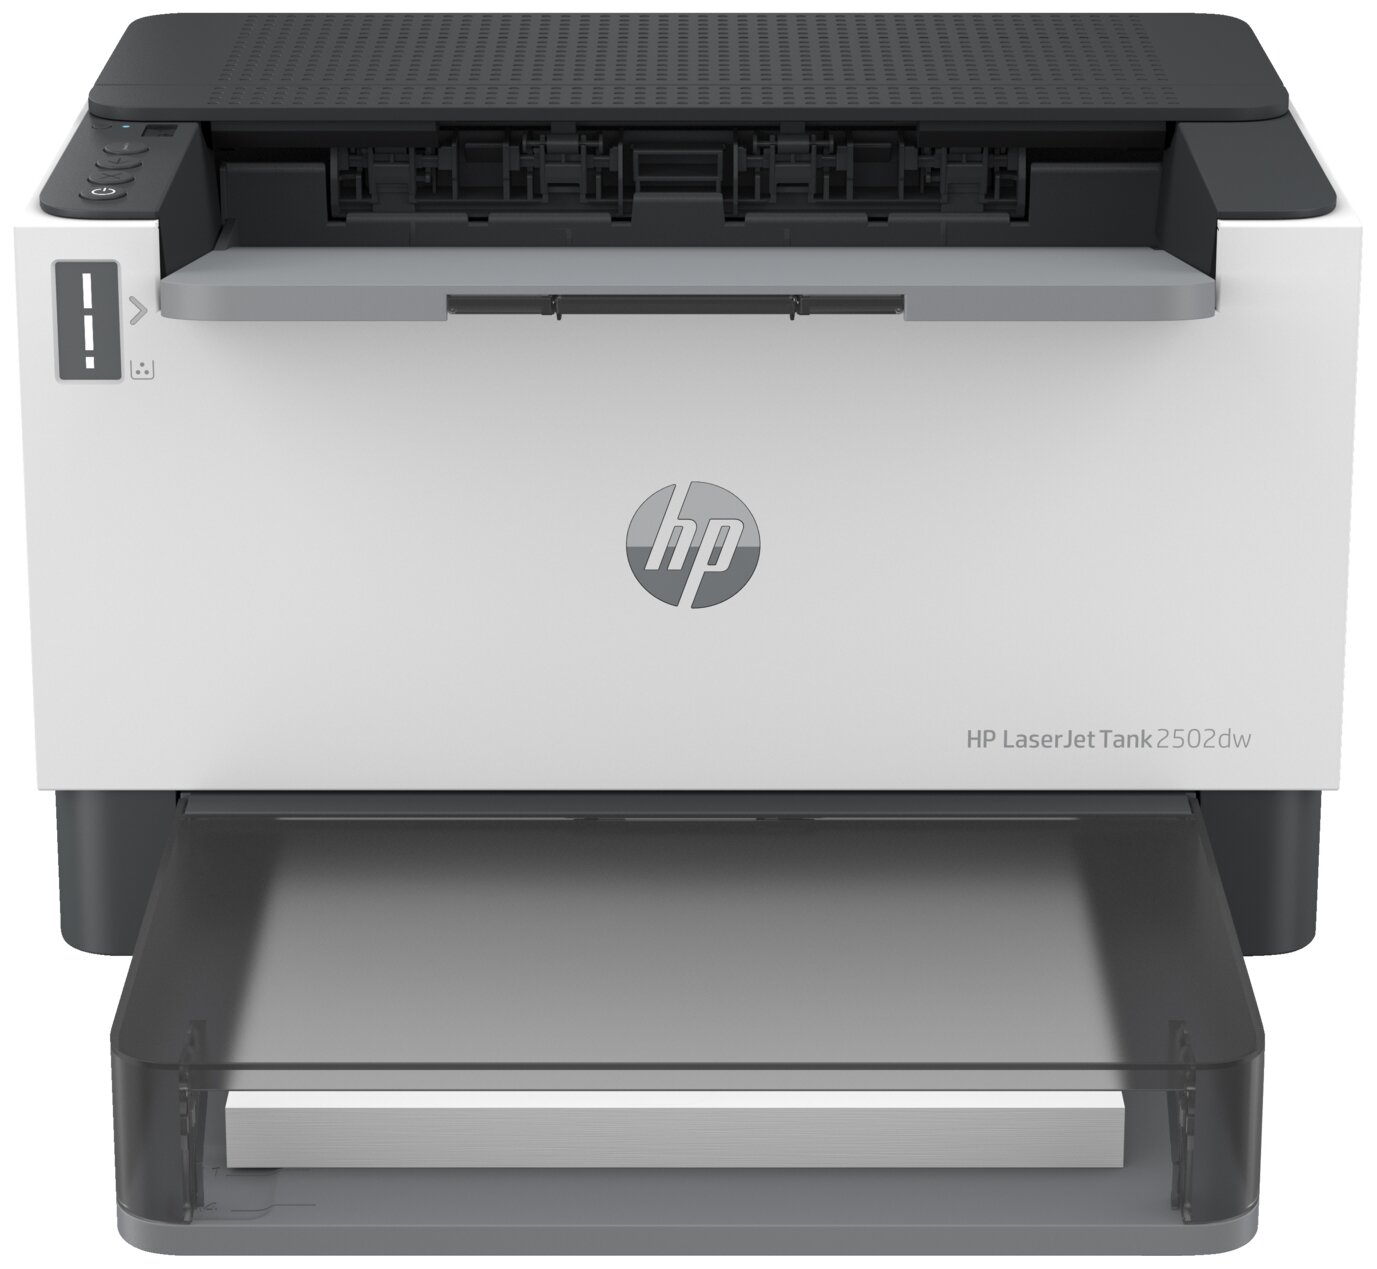 Принтер HP LaserJet Tank 2502dw 2R3E3A/A4 черно-белый/печать Лазерный 600x600dpi 22стр.мин/Wi-Fi Bluetooth Сетевой интерфейс (RJ-45)